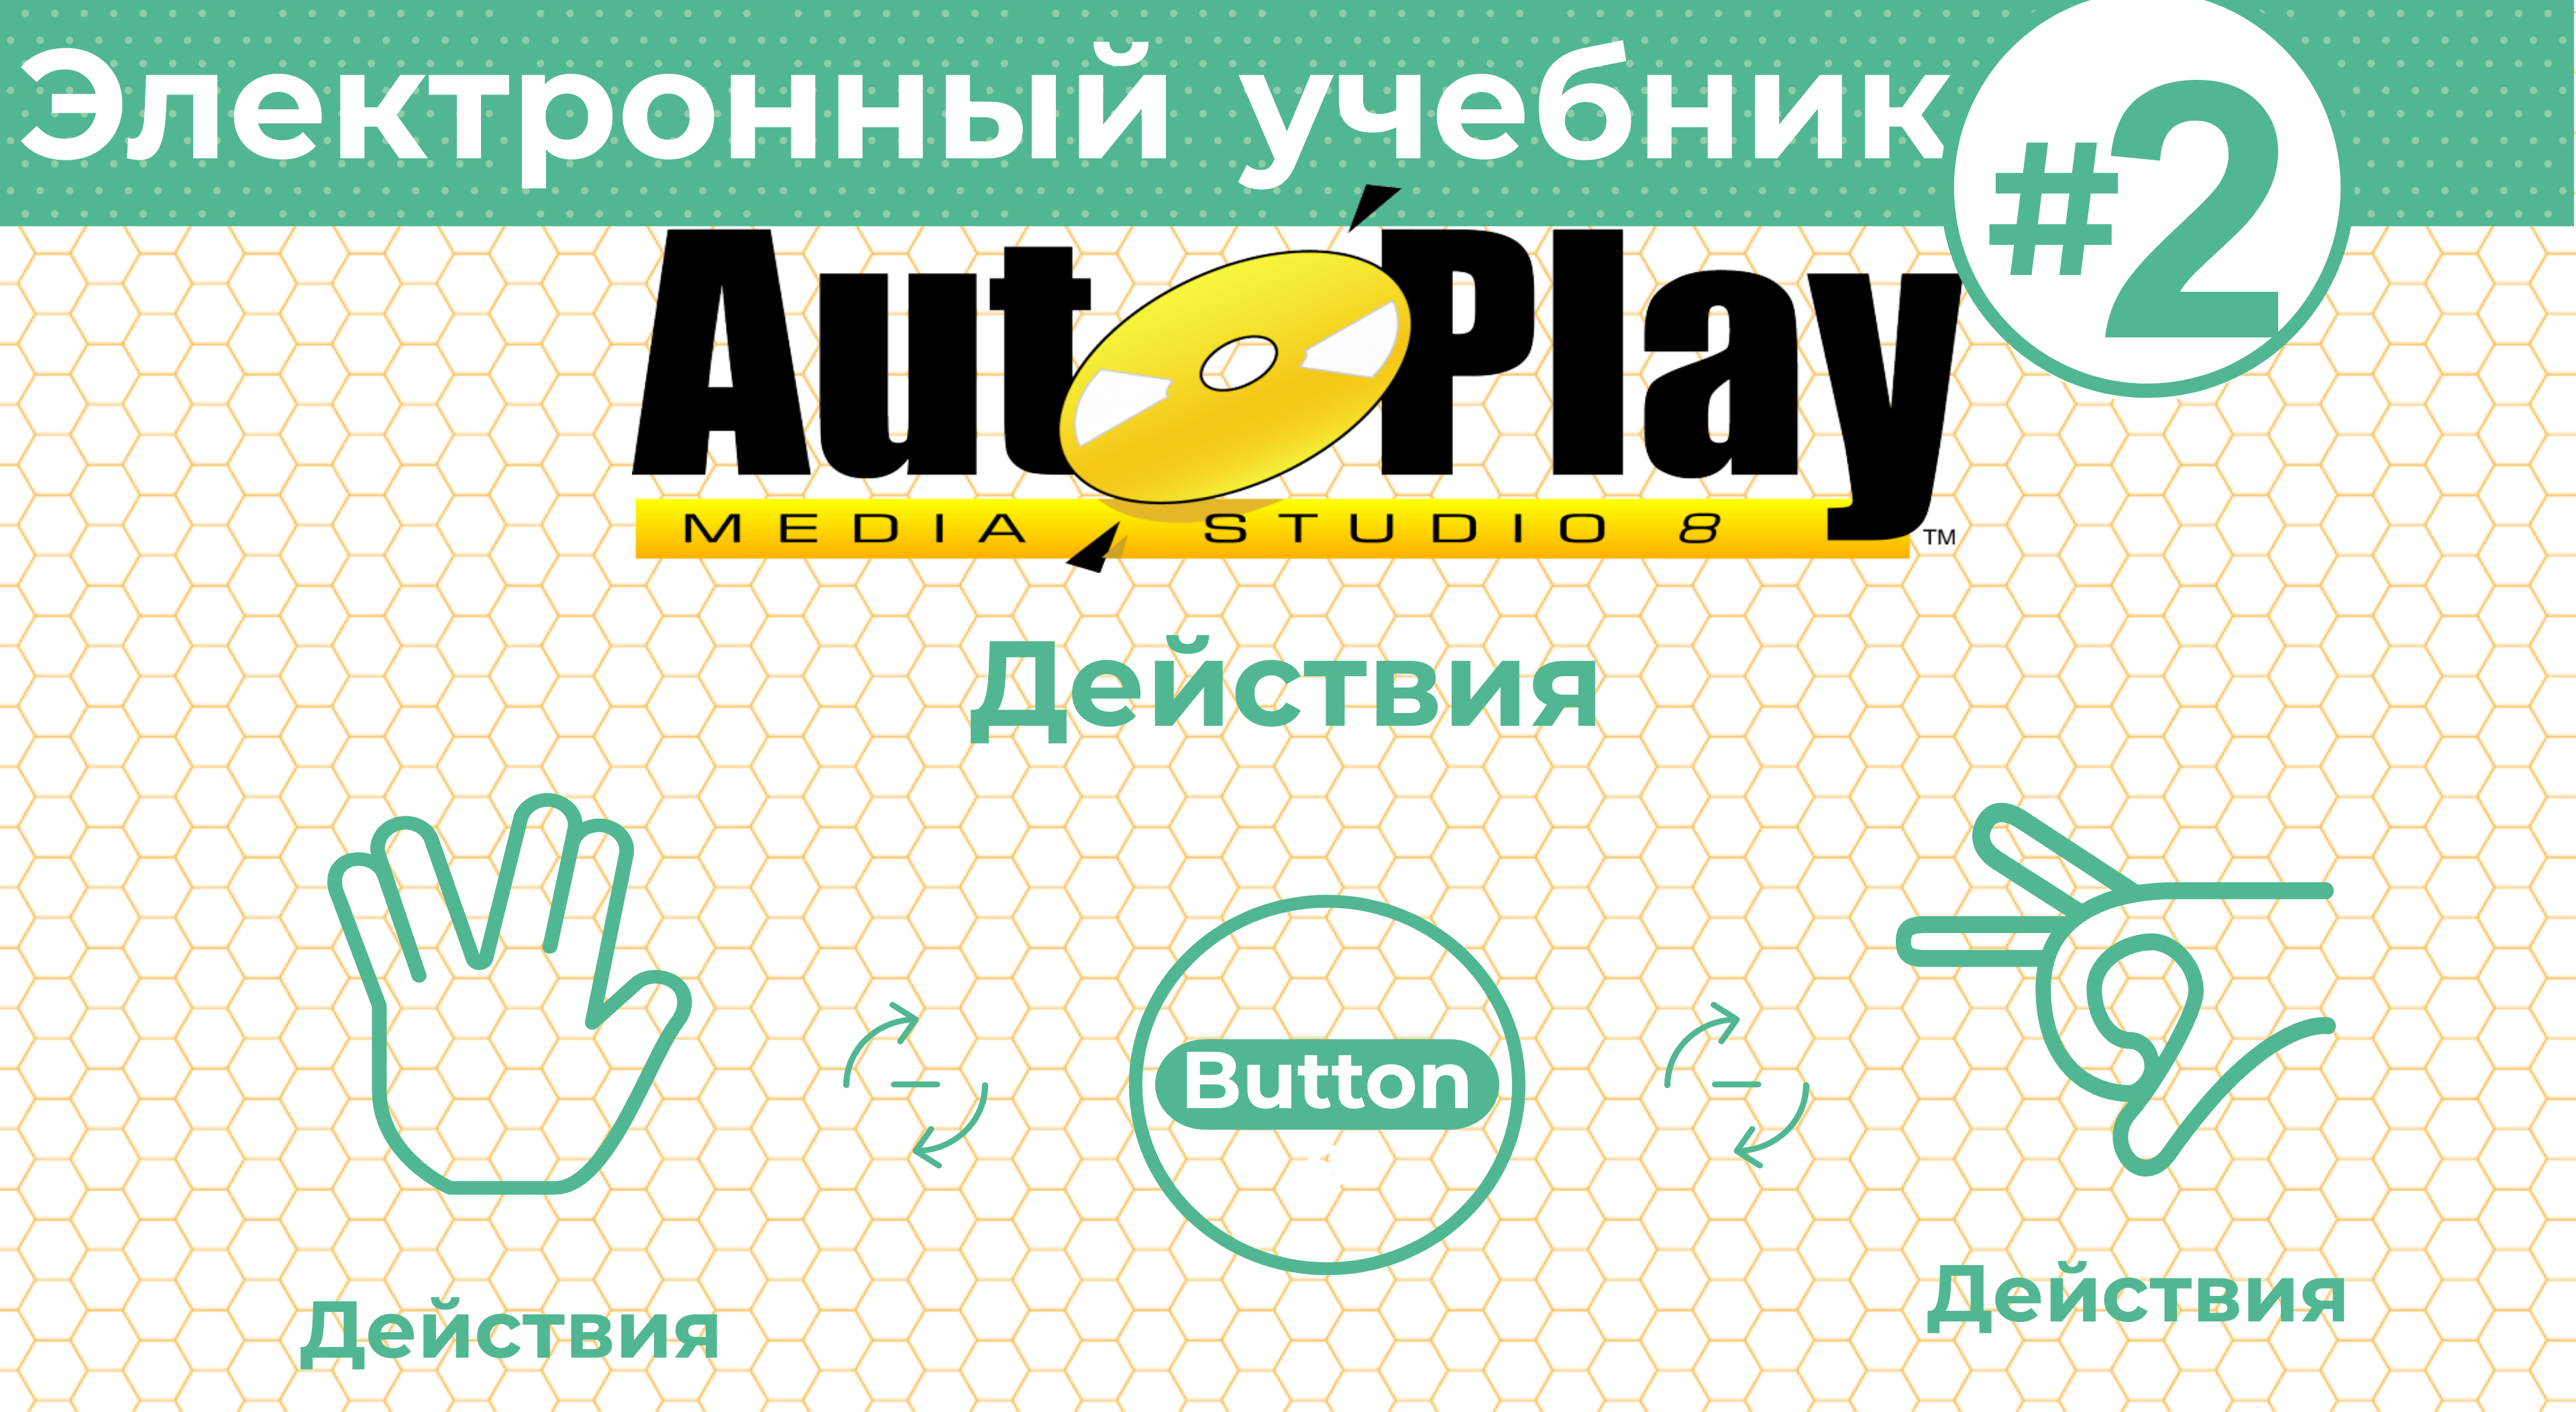 Как создать электронный учебник с AutoPlay Media Studio #2